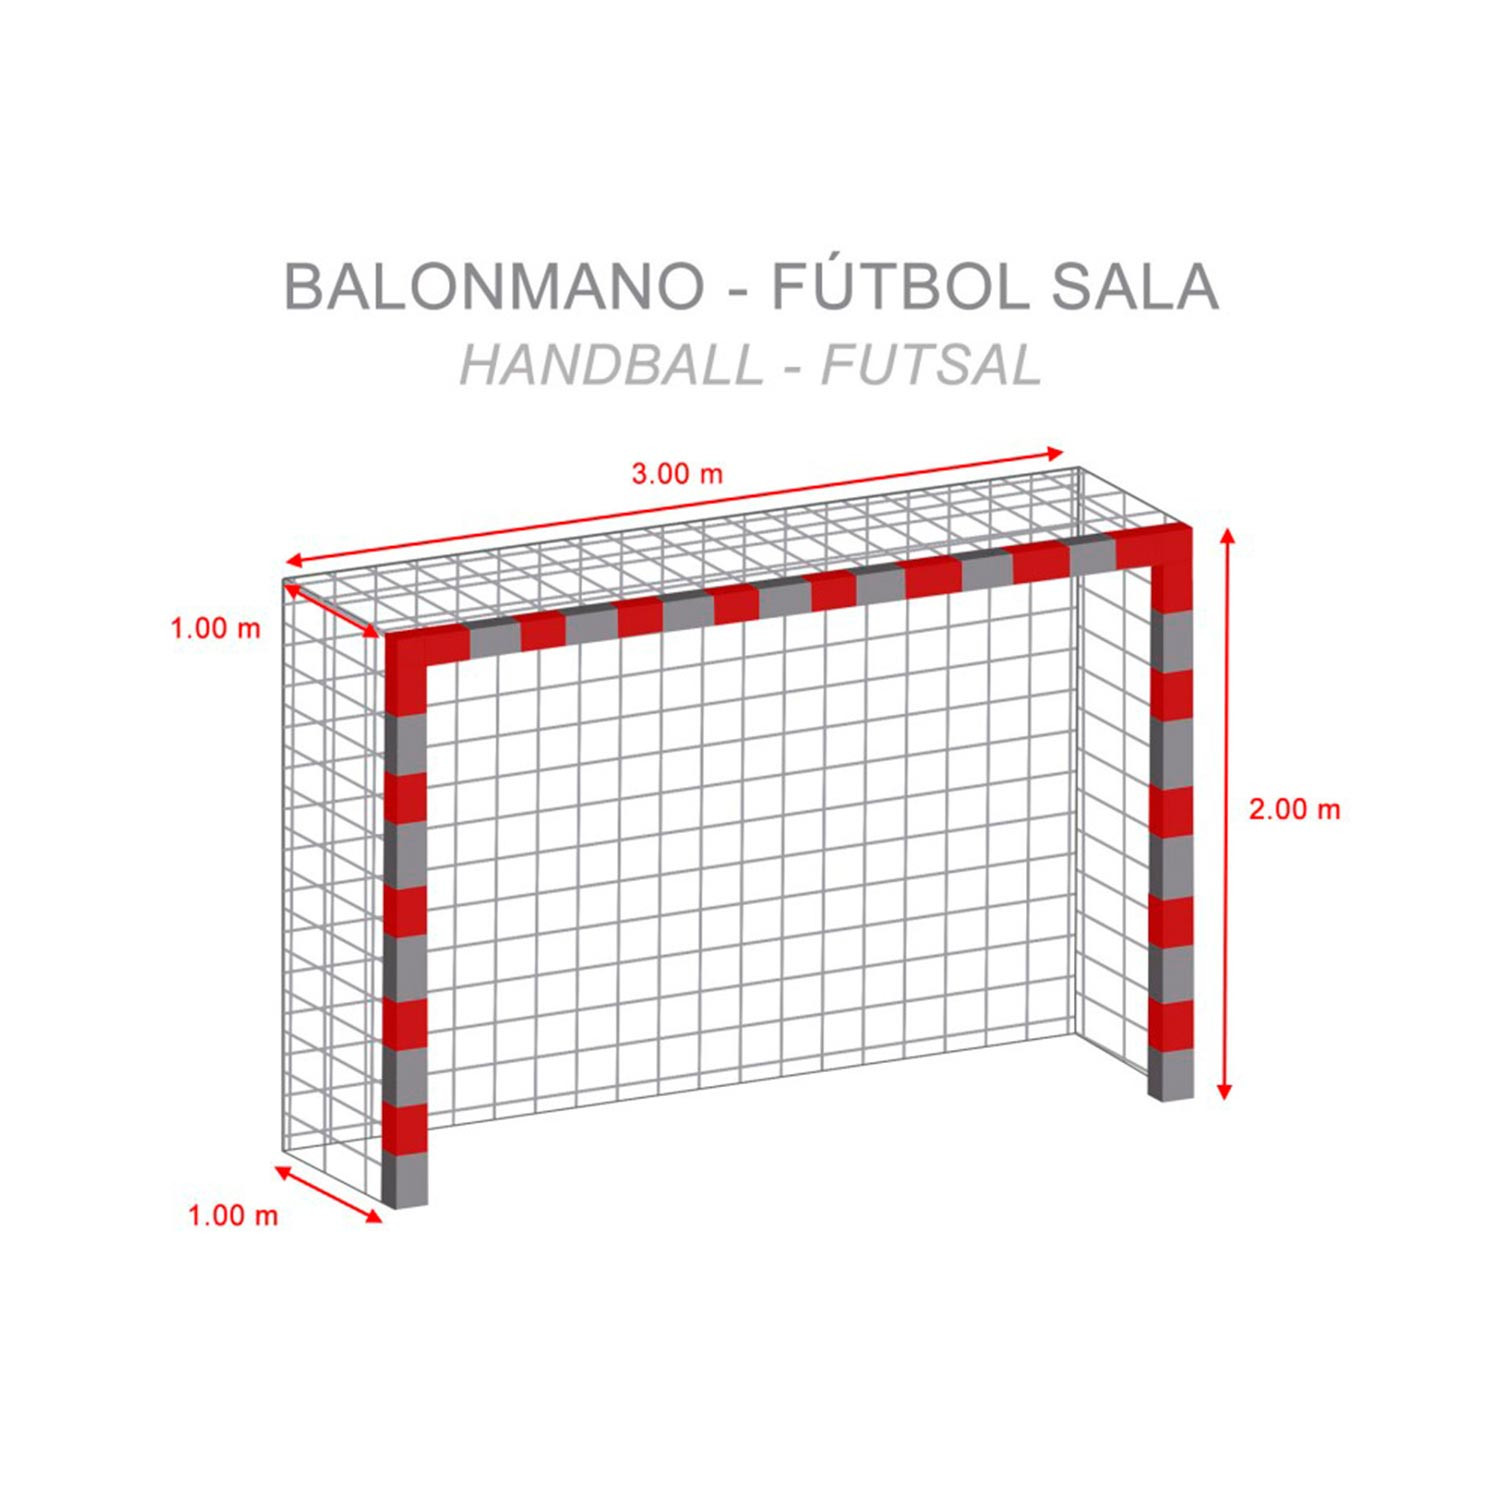 compra Red Precisión Para Portería Futbol 11 en nuestra web